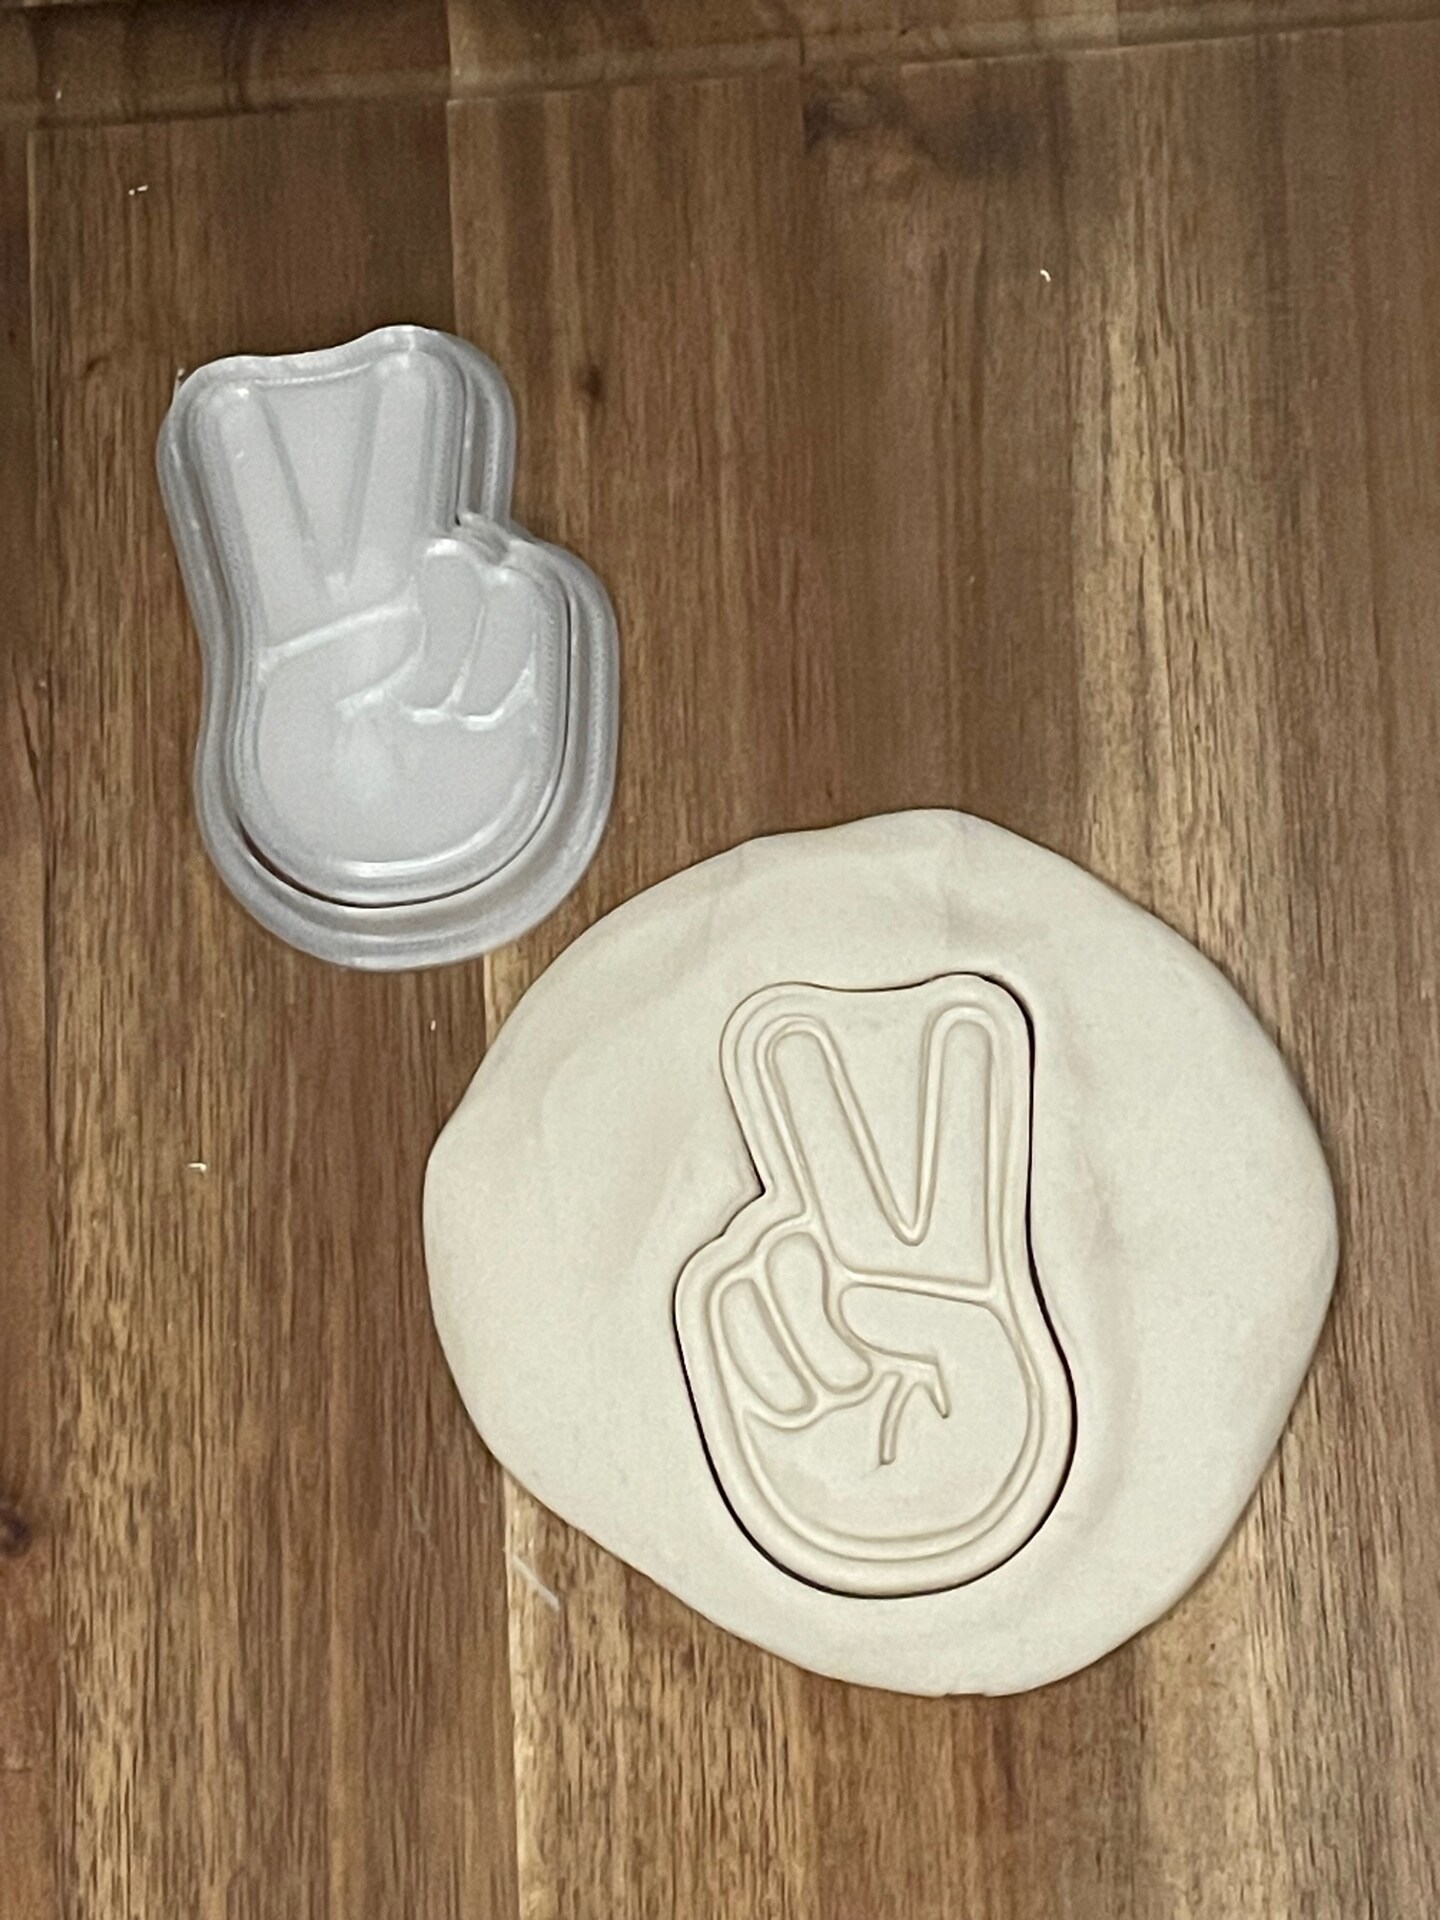 Ceramic Cookie Press Stamps, Ceramic Pottery Tools, Ceramic Embosser Set